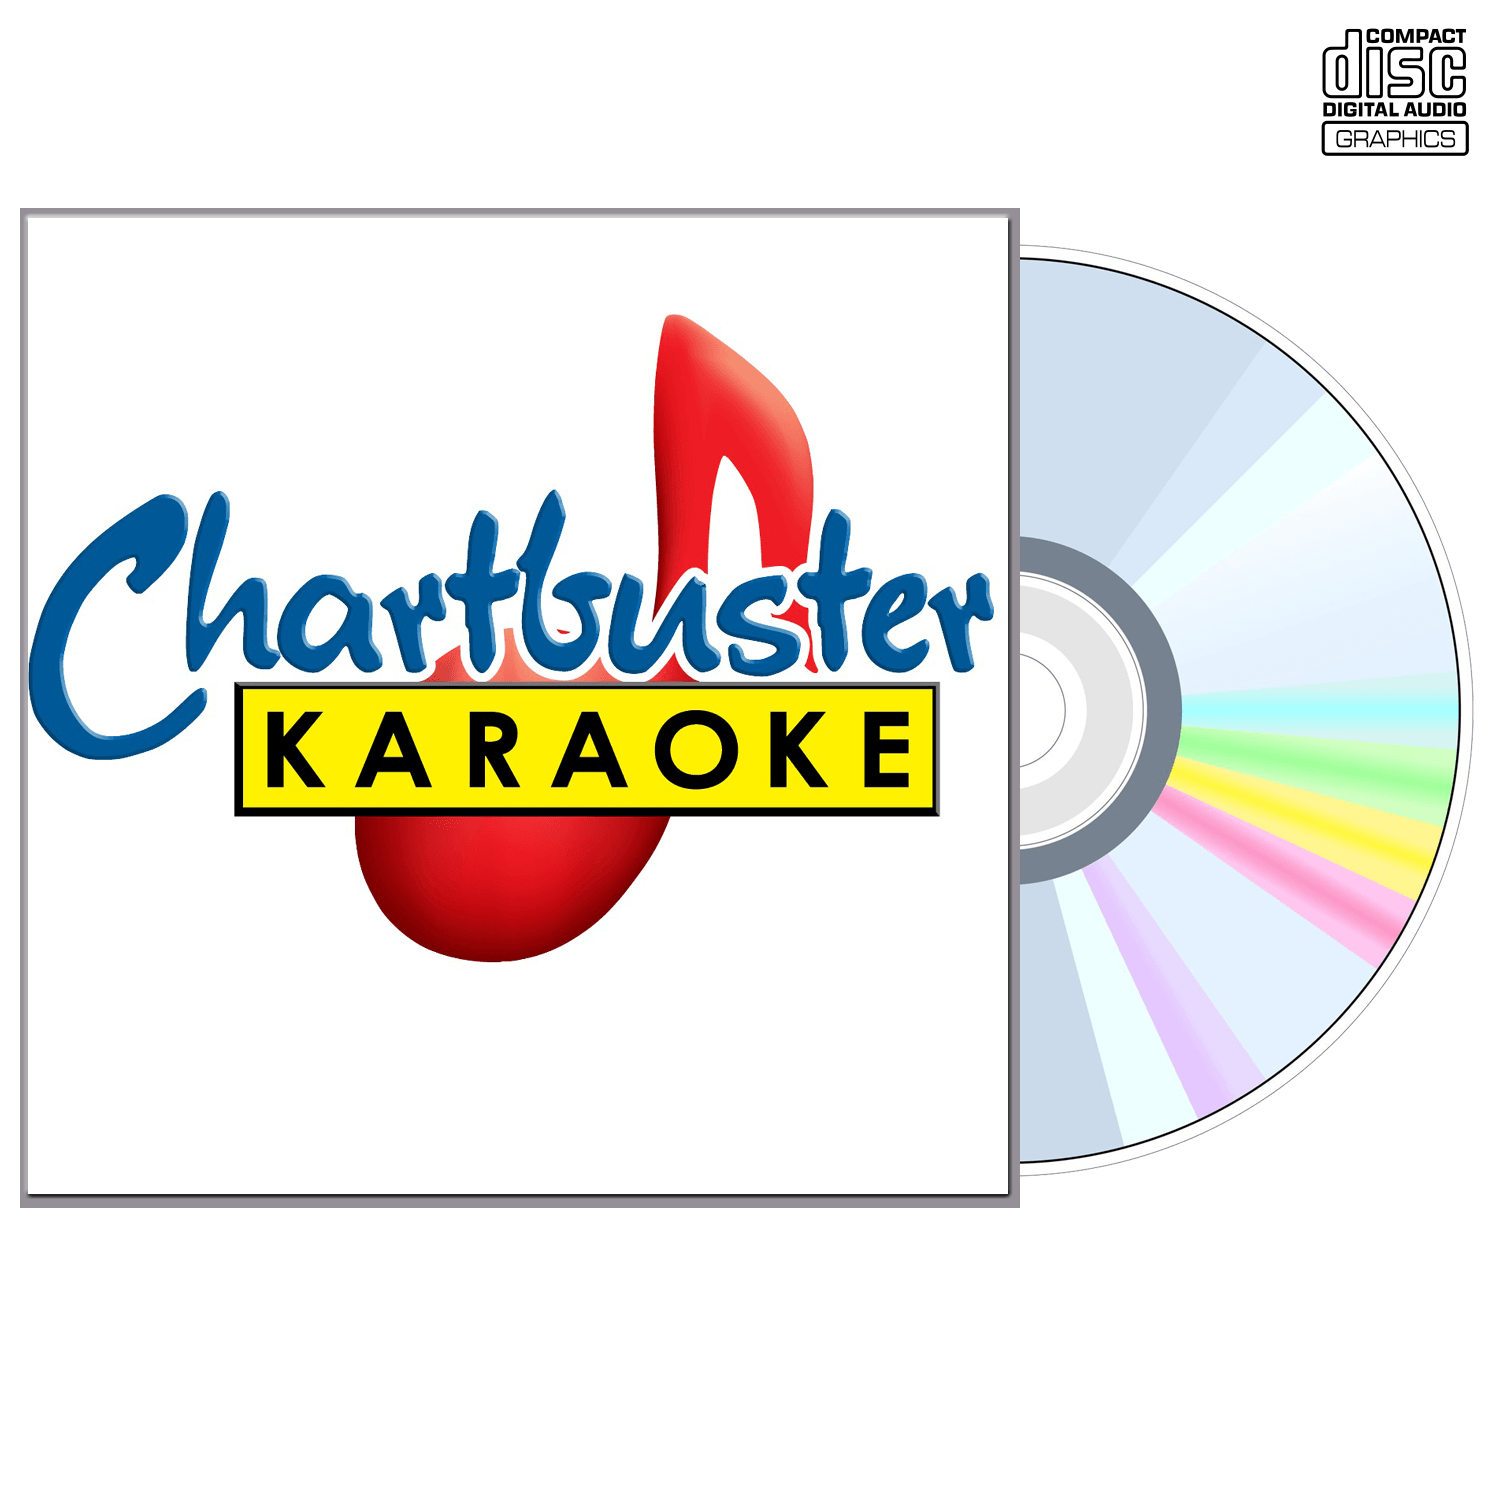 Ashley Gearing - CD+G - Chartbuster Karaoke - Karaoke Home Entertainment